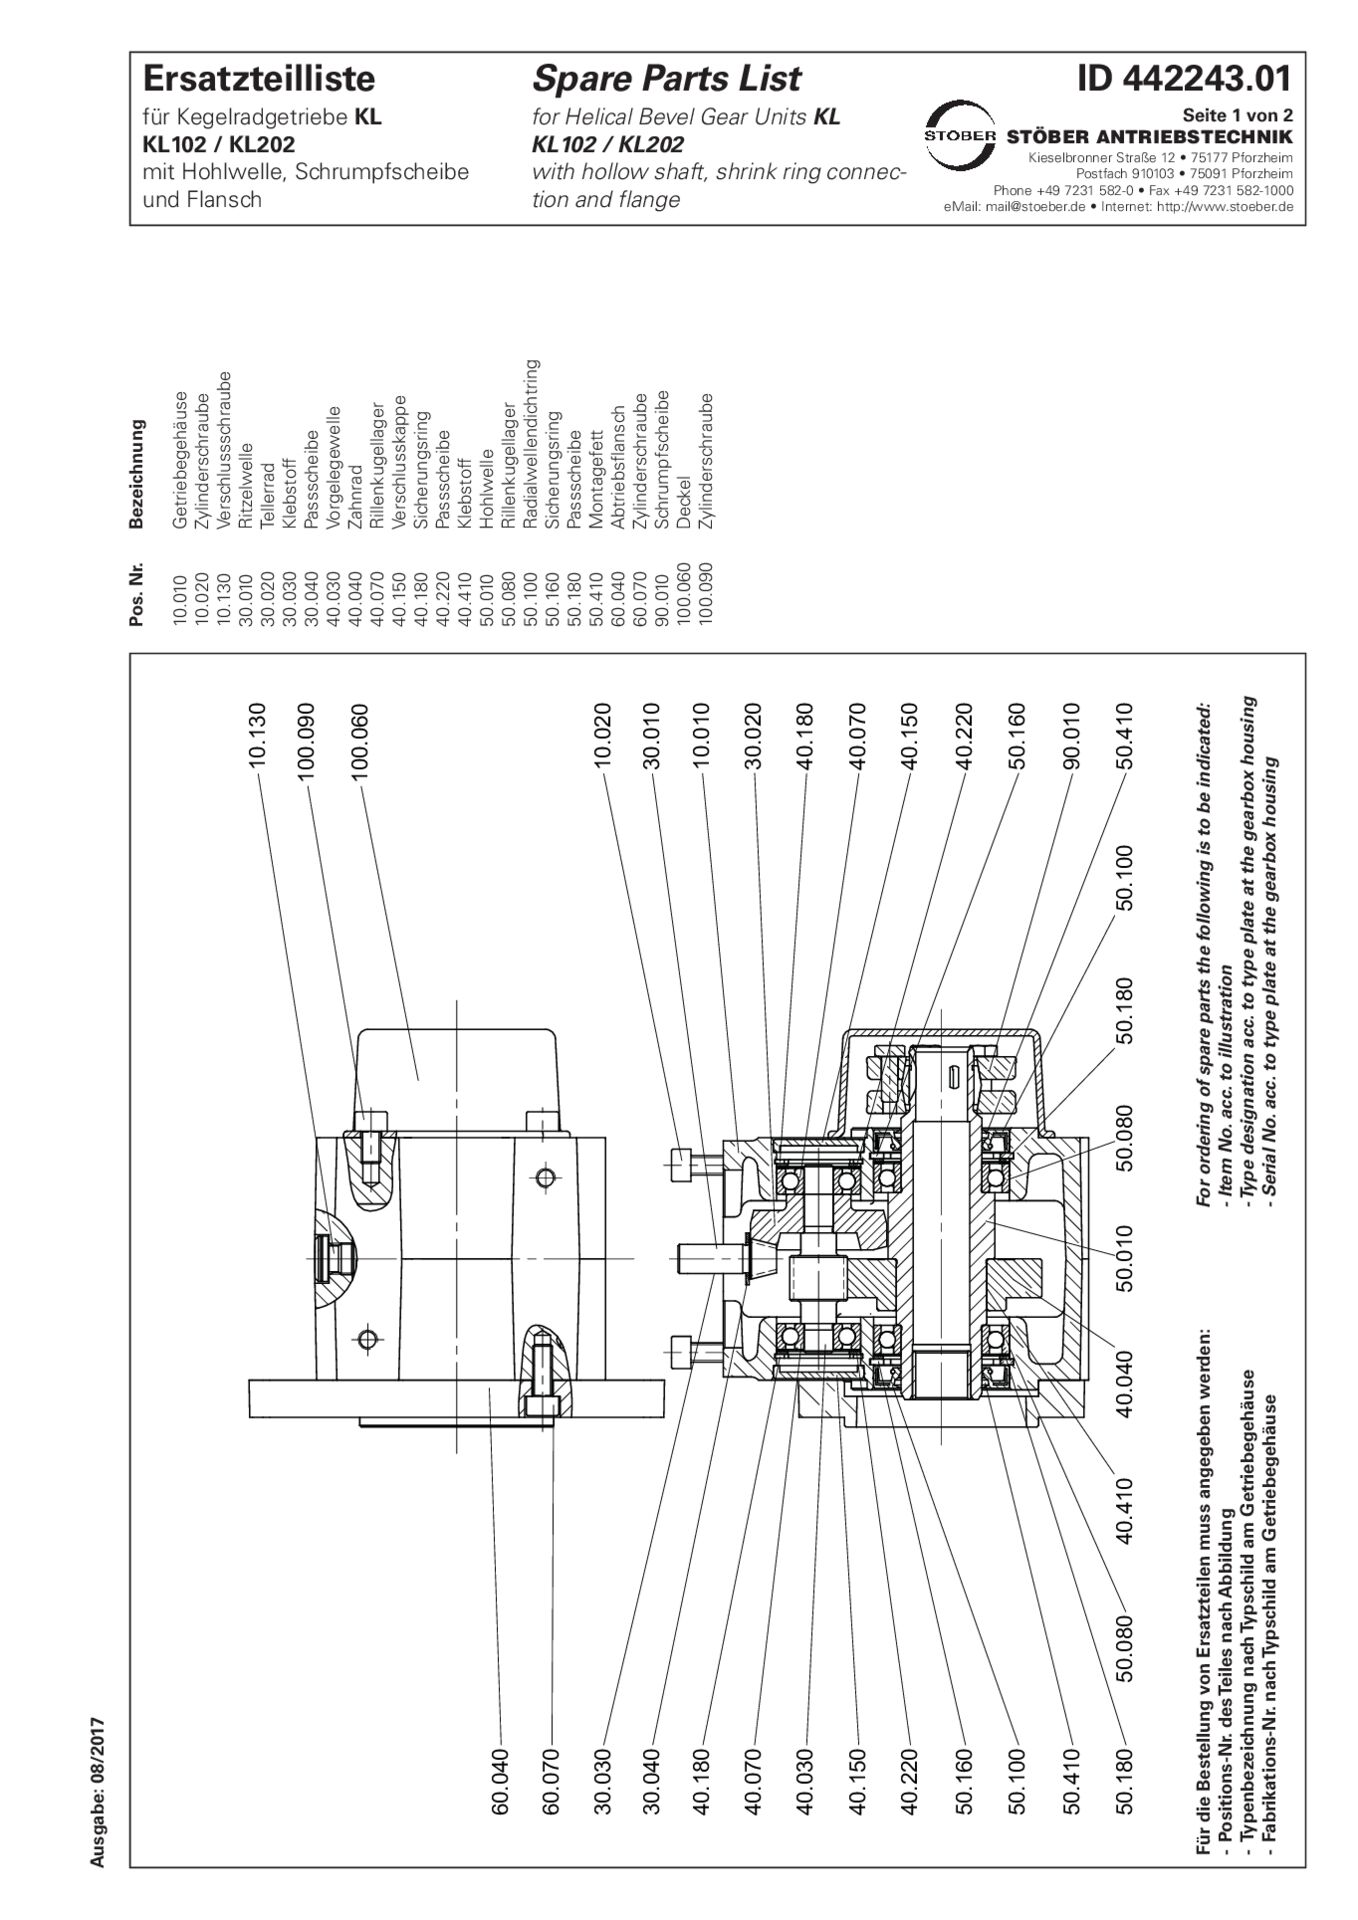 Ersatzteilliste Kegelradgetriebe KL102 KL202 SFReplacement parts list helical bevel gear units KL102 KL202 SF